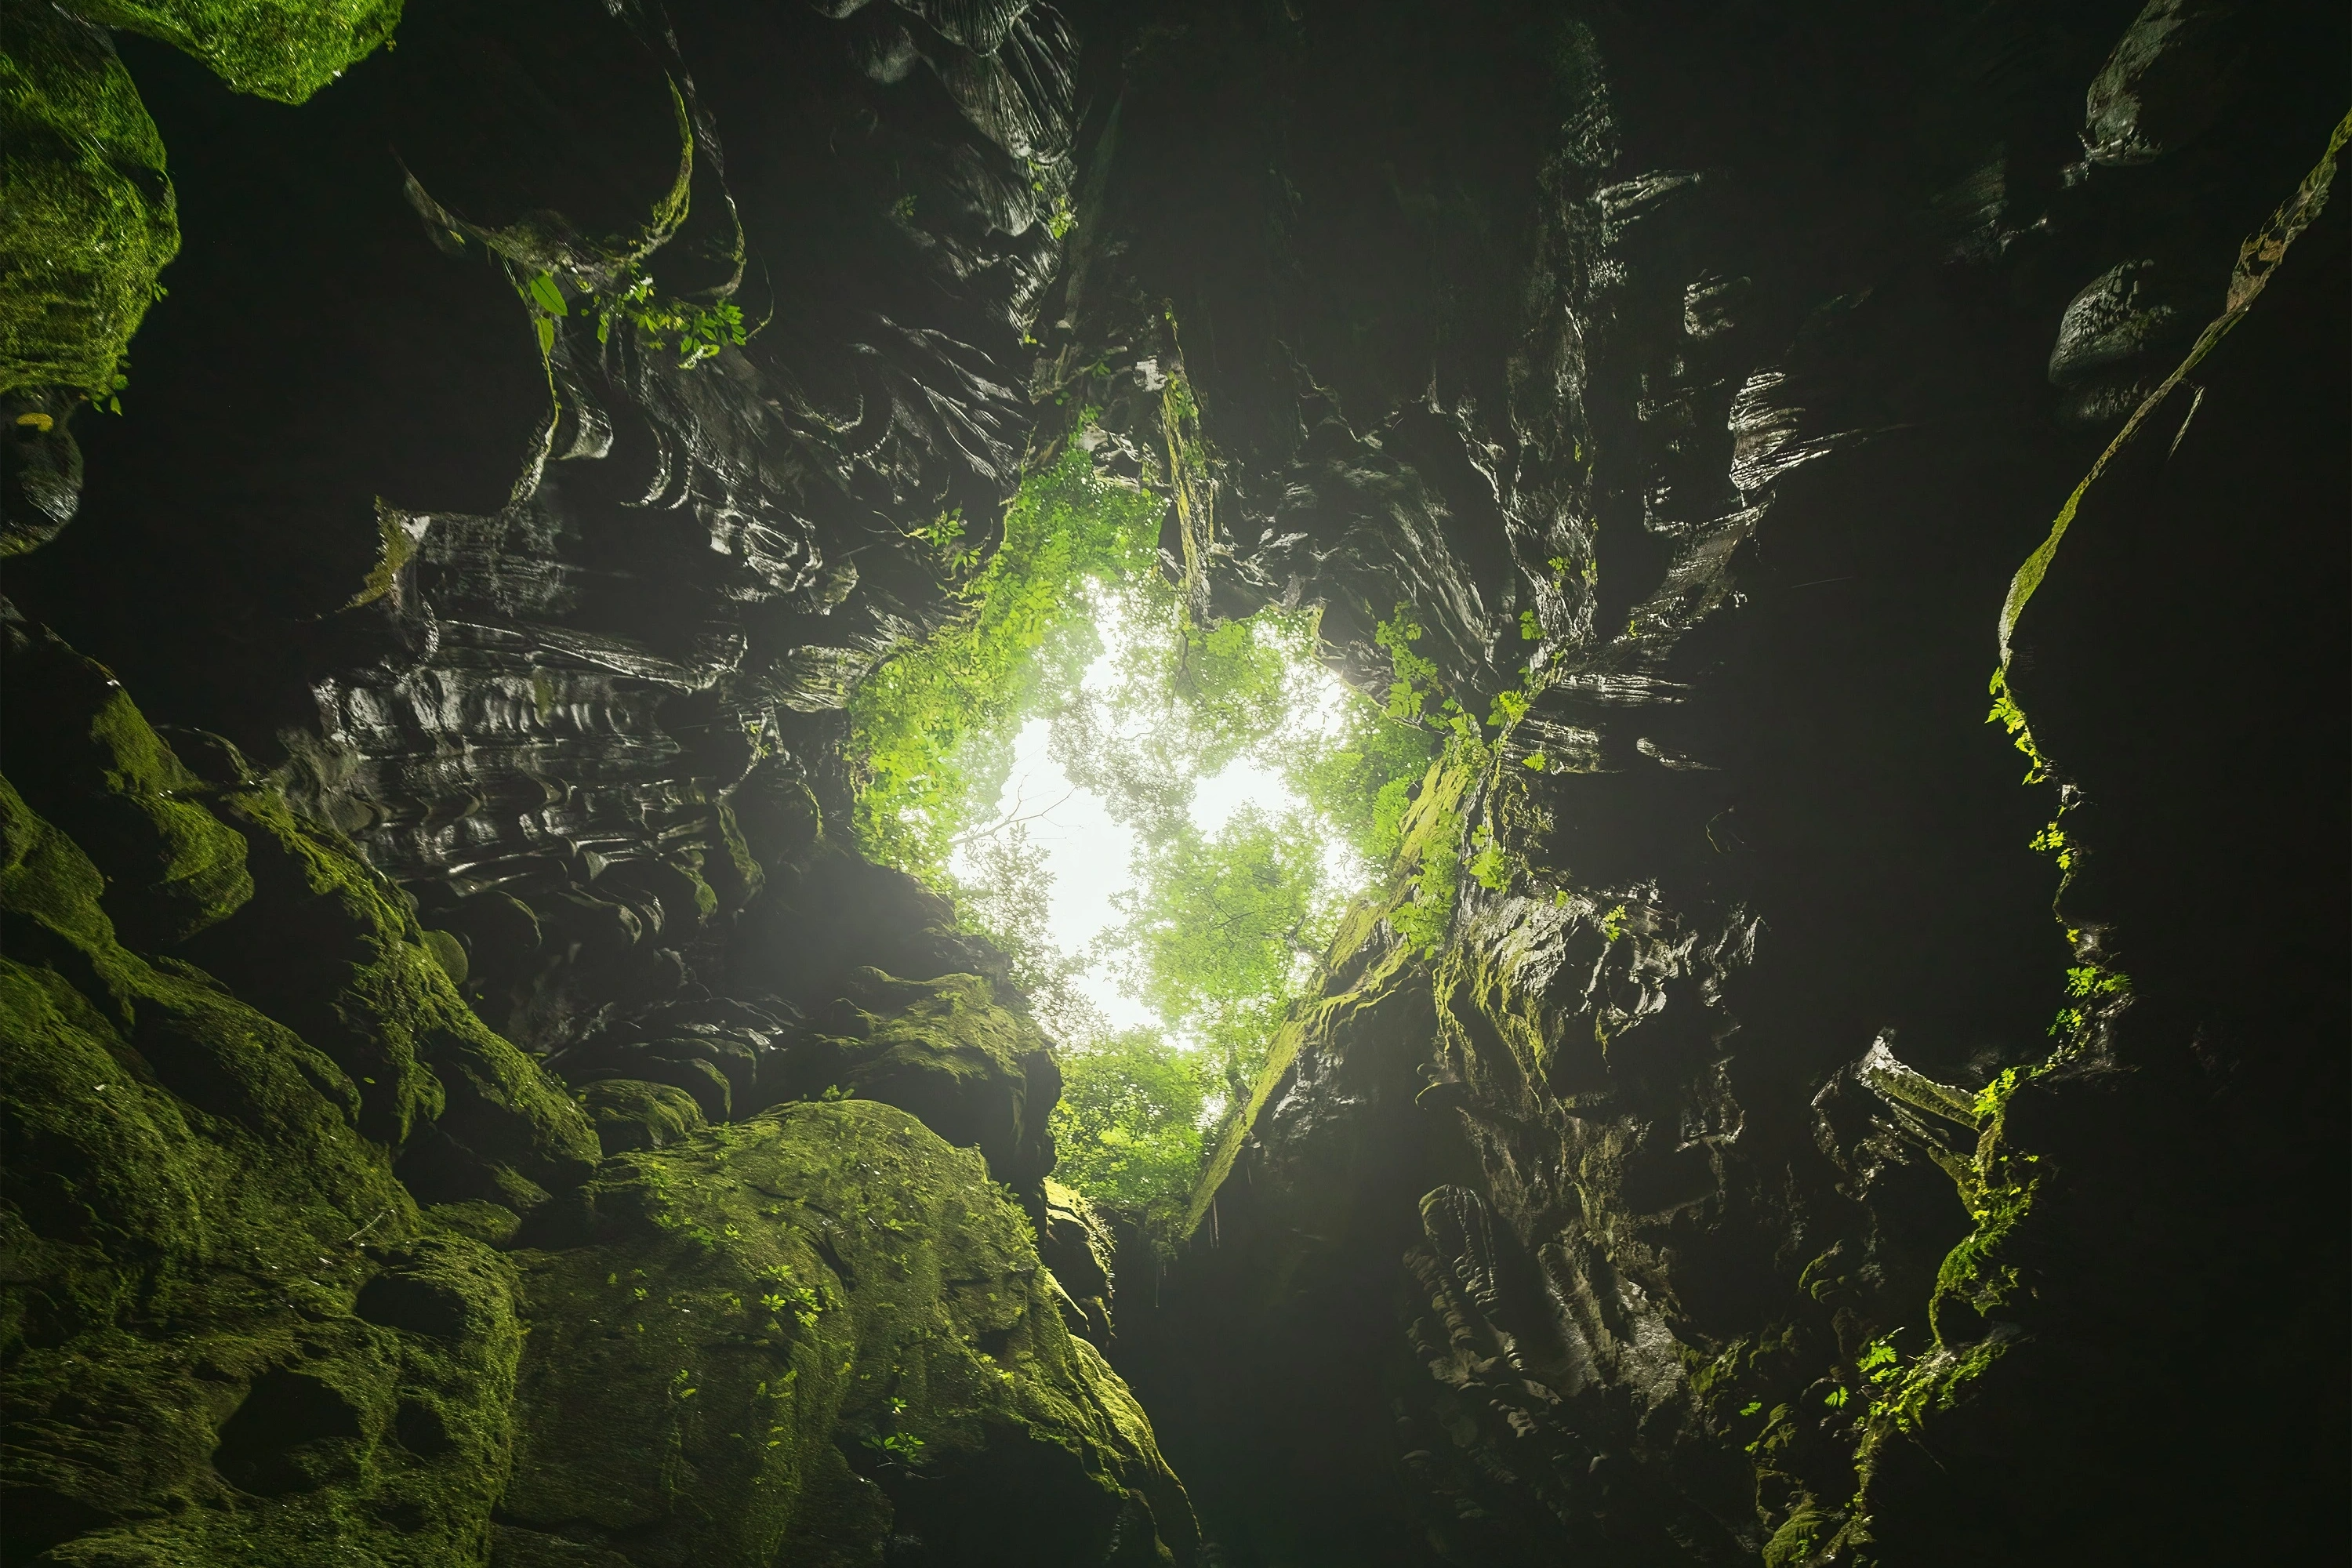 Vẻ đẹp siêu thực trong hang động có hồ nước bí ẩn treo lơ lửng - 12